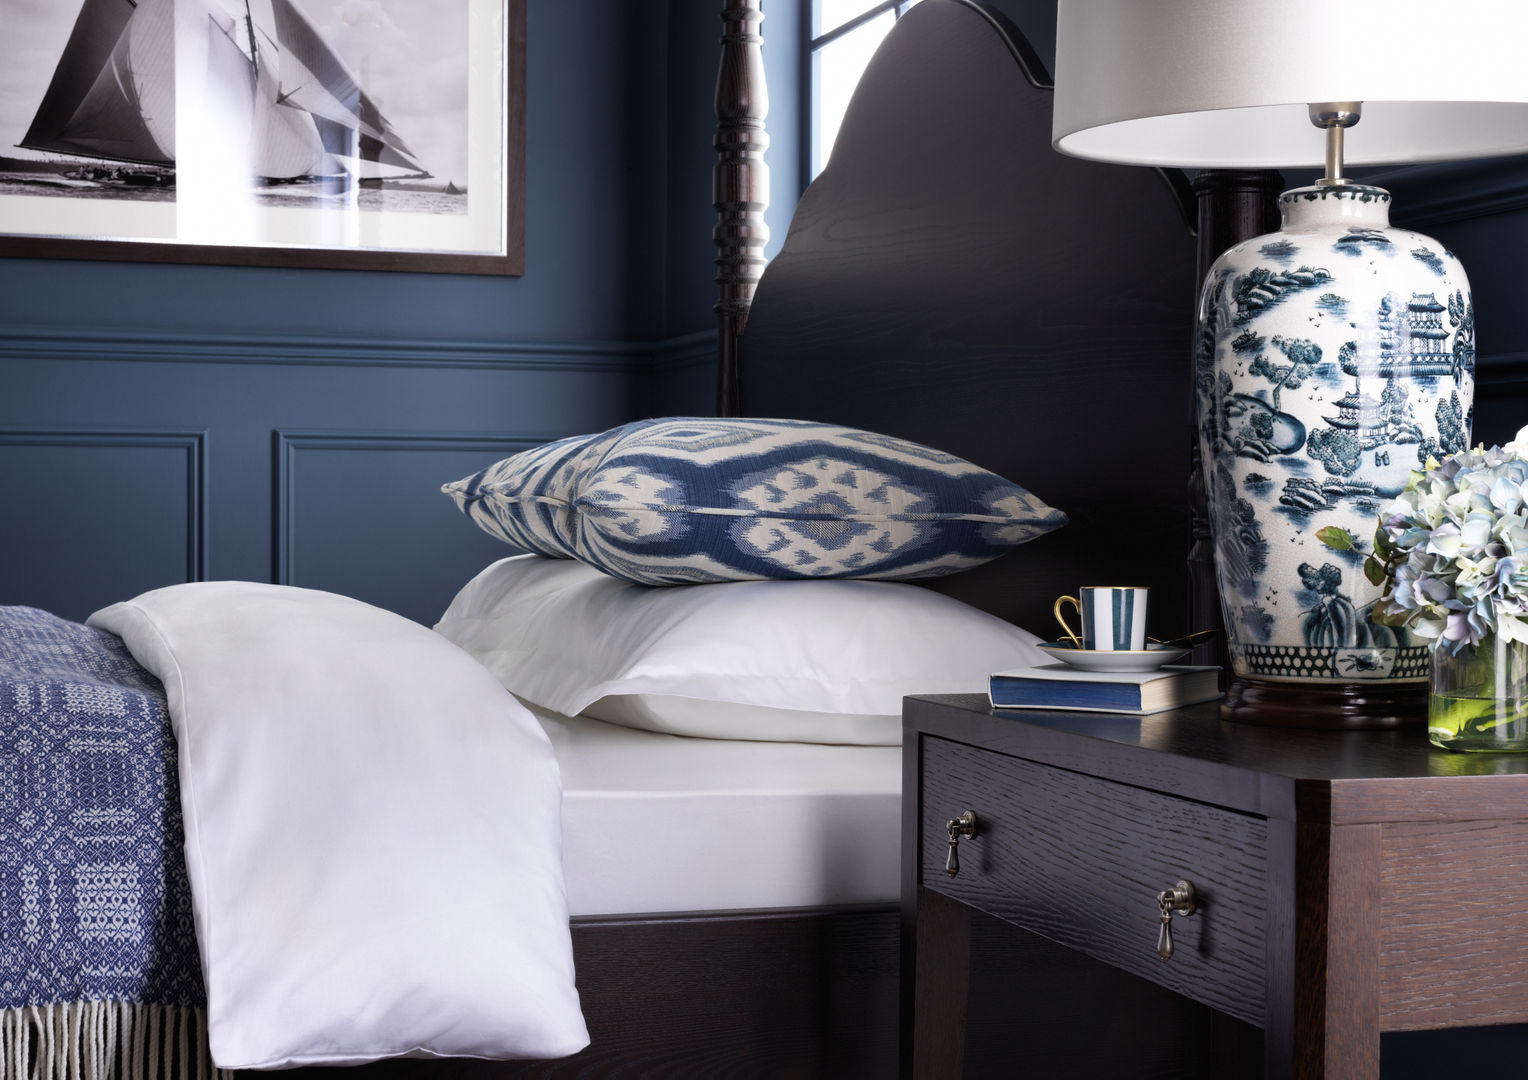 SS16 Style Guide - Coastal Elegance - Bedroom LuxDeco Dormitorios de estilo rural country,bedroom,blue,bedside table